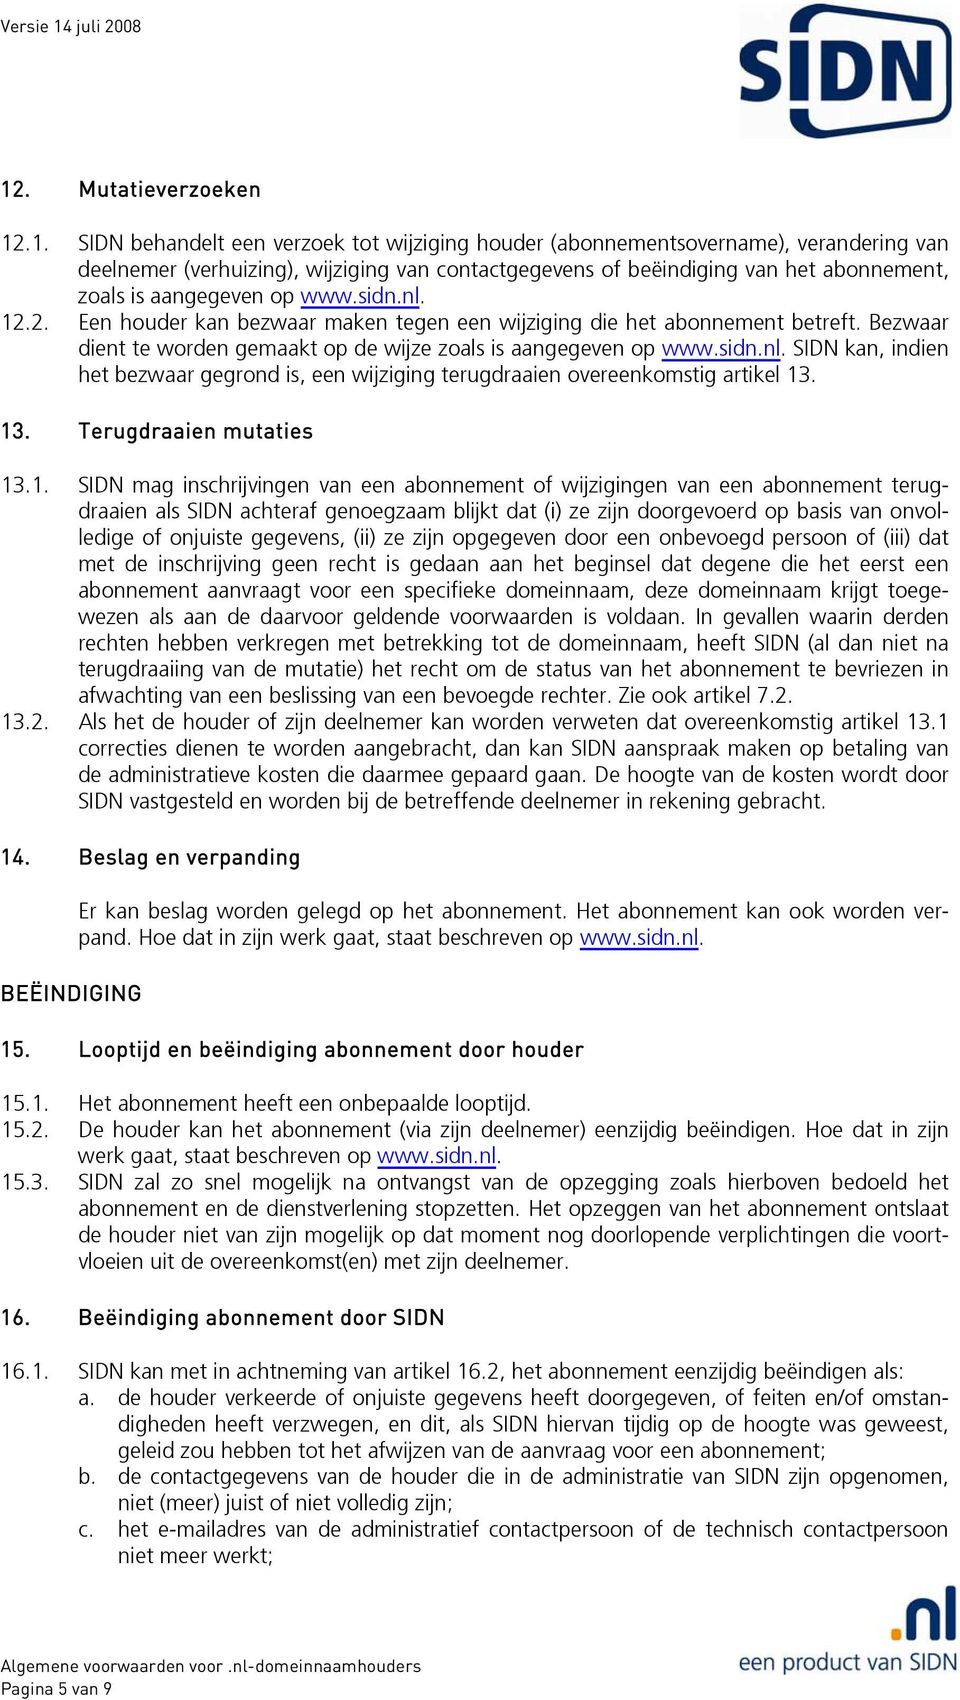 Bezwaar dient te worden gemaakt op de wijze zoals is aangegeven op www.sidn.nl. SIDN kan, indien het bezwaar gegrond is, een wijziging terugdraaien overeenkomstig artikel 13. 13. Terugdraaien mutaties 13.